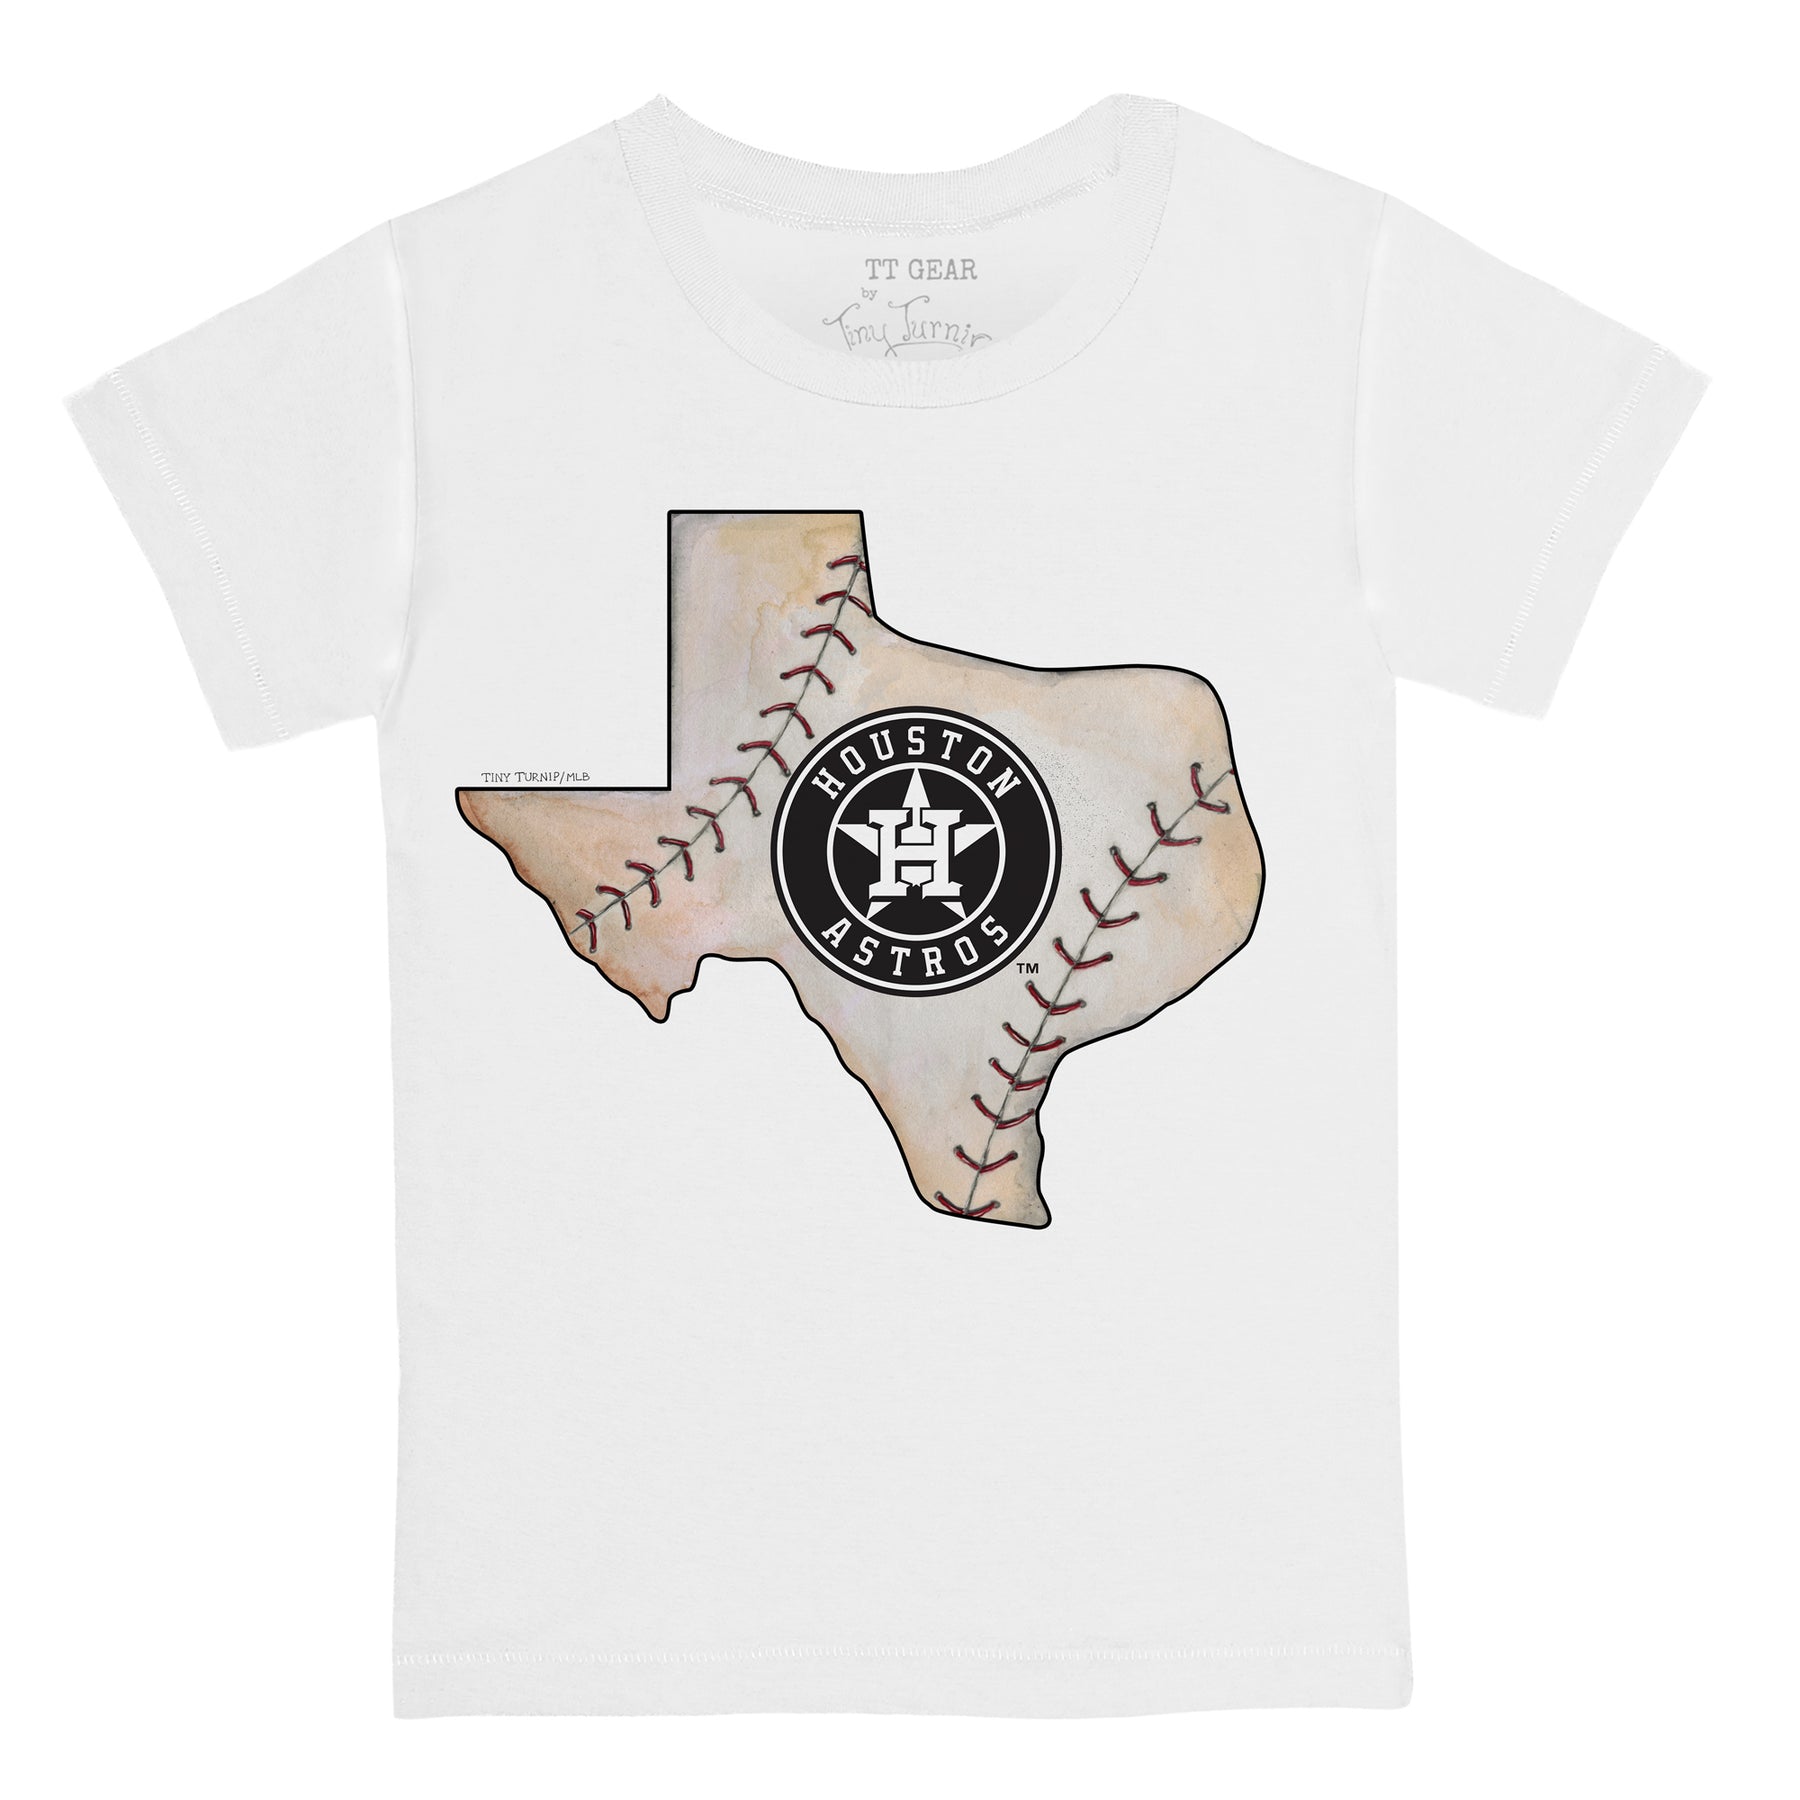 Women's Tiny Turnip White Houston Astros Mom T-Shirt Size: Small